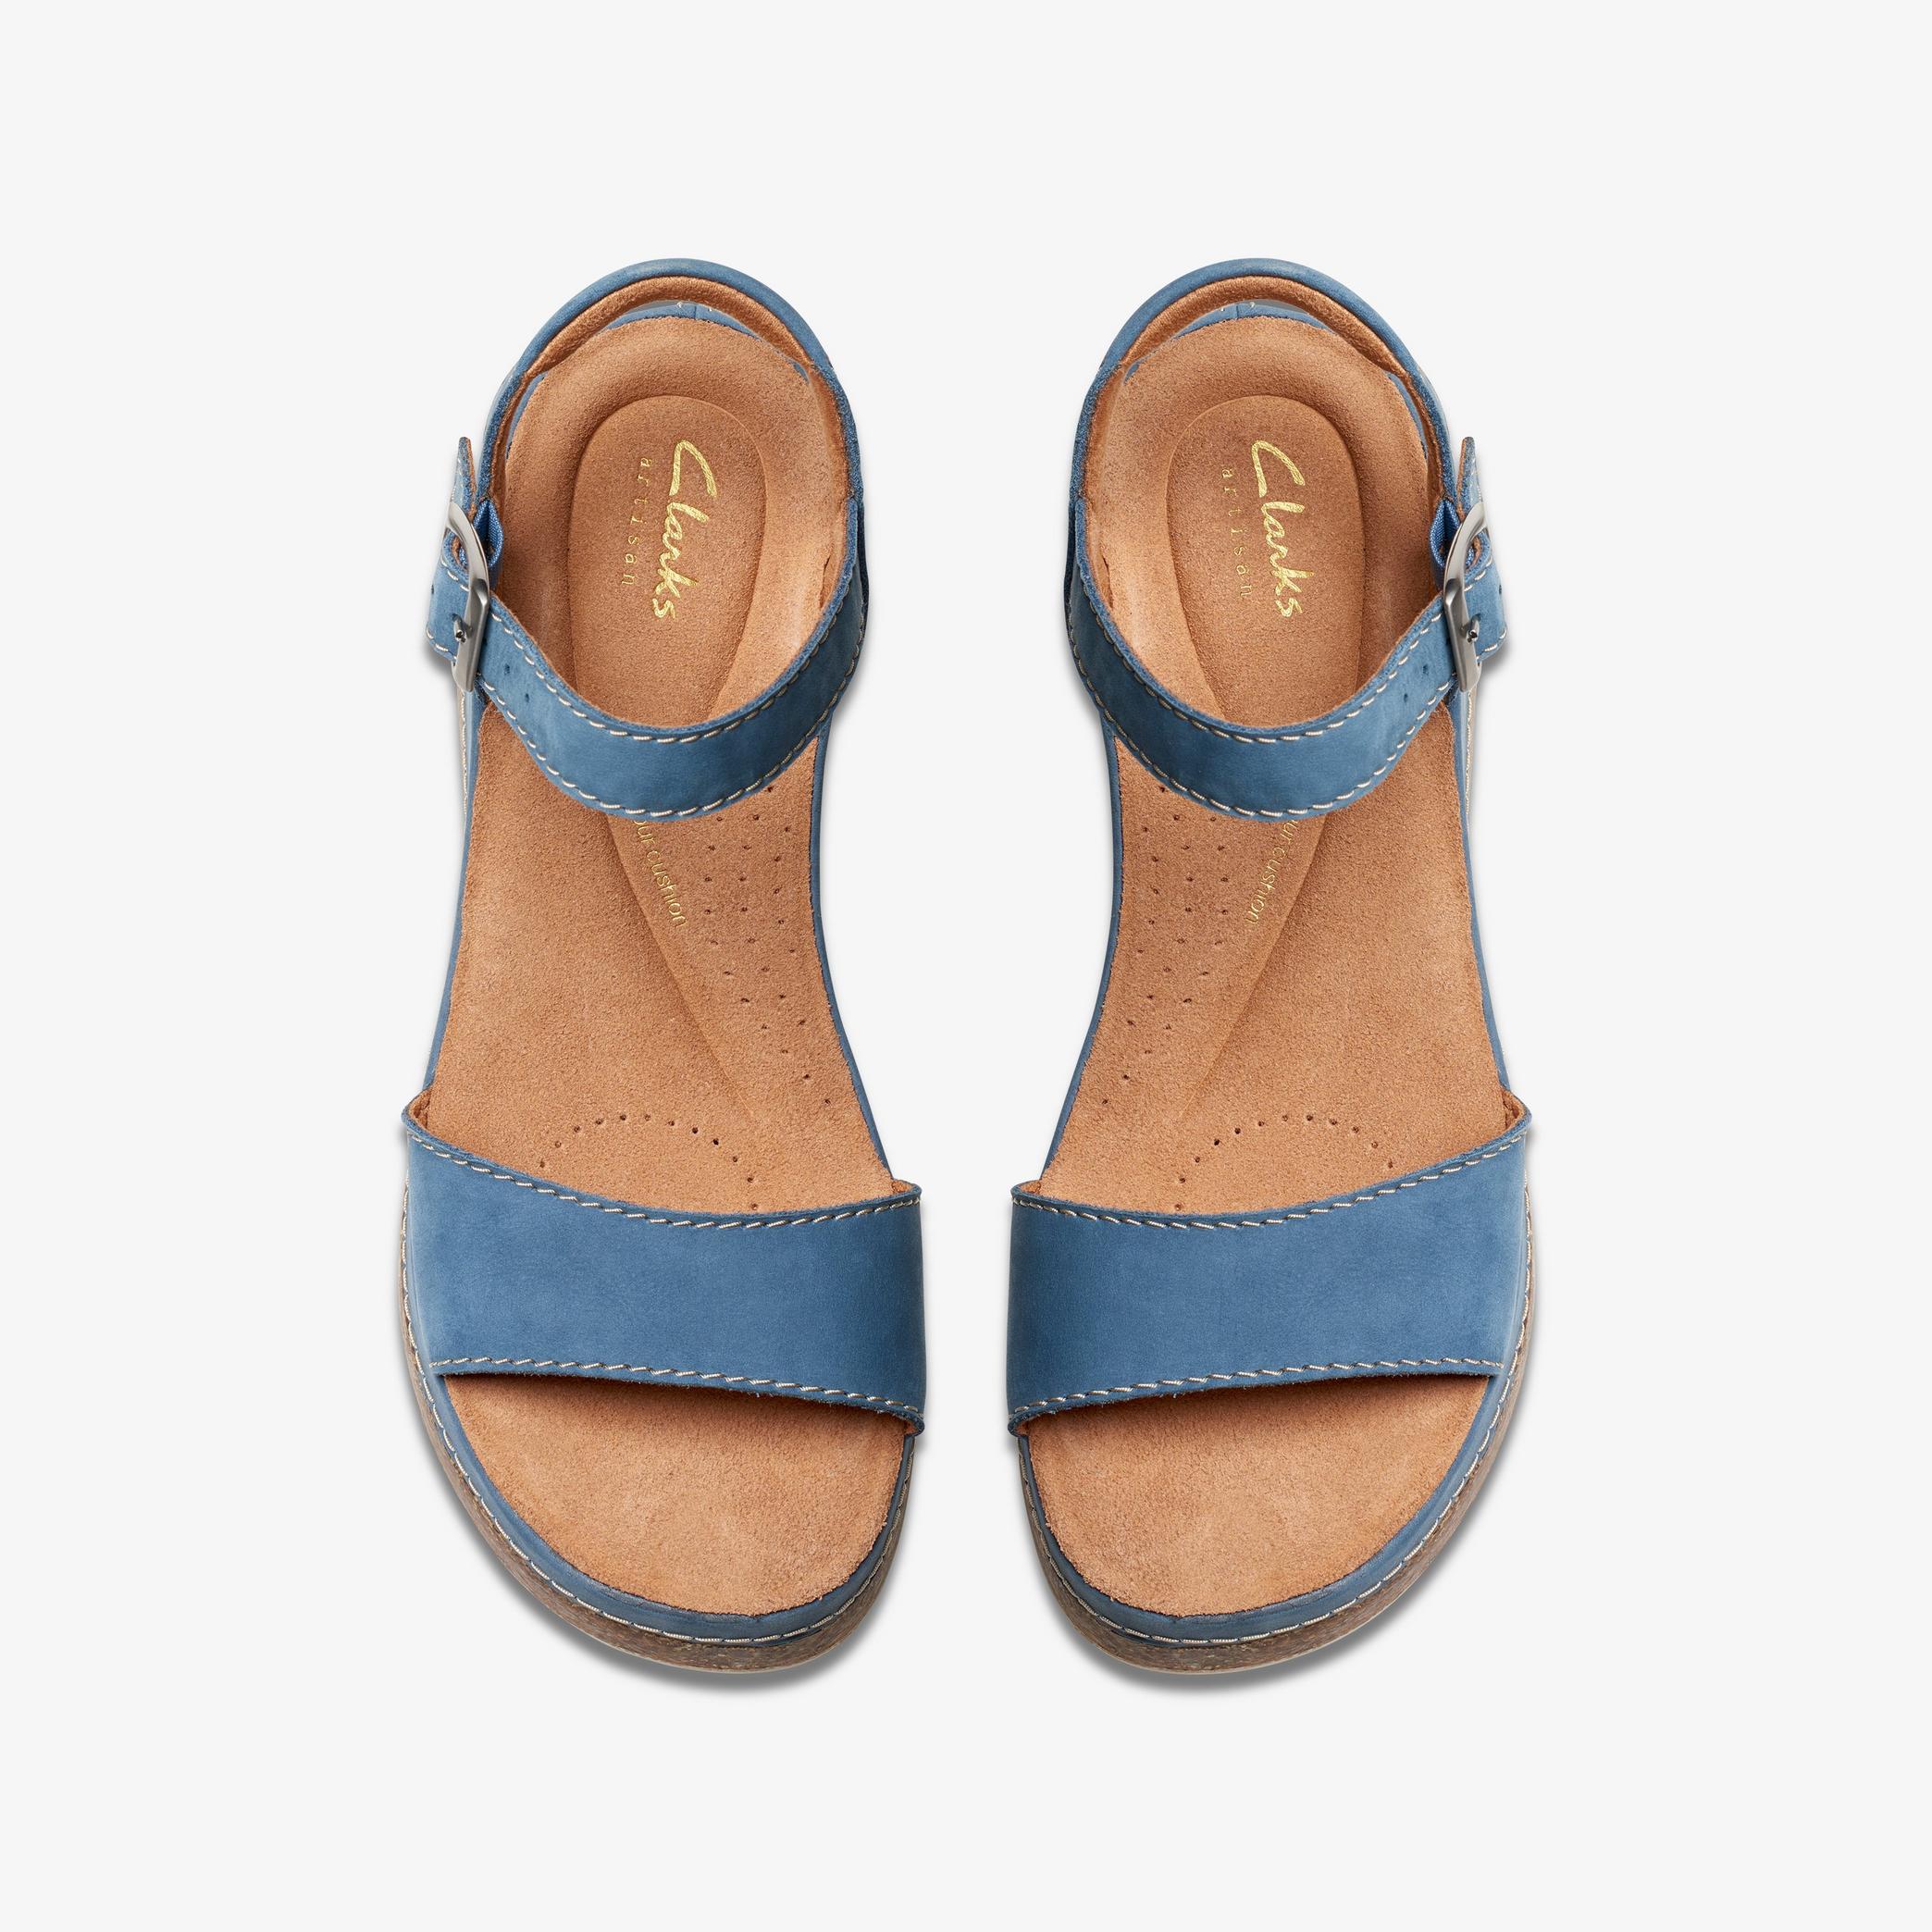 Chaussures à talon compensé en nubuck bleu Kassanda Lily, vue 6 de 6